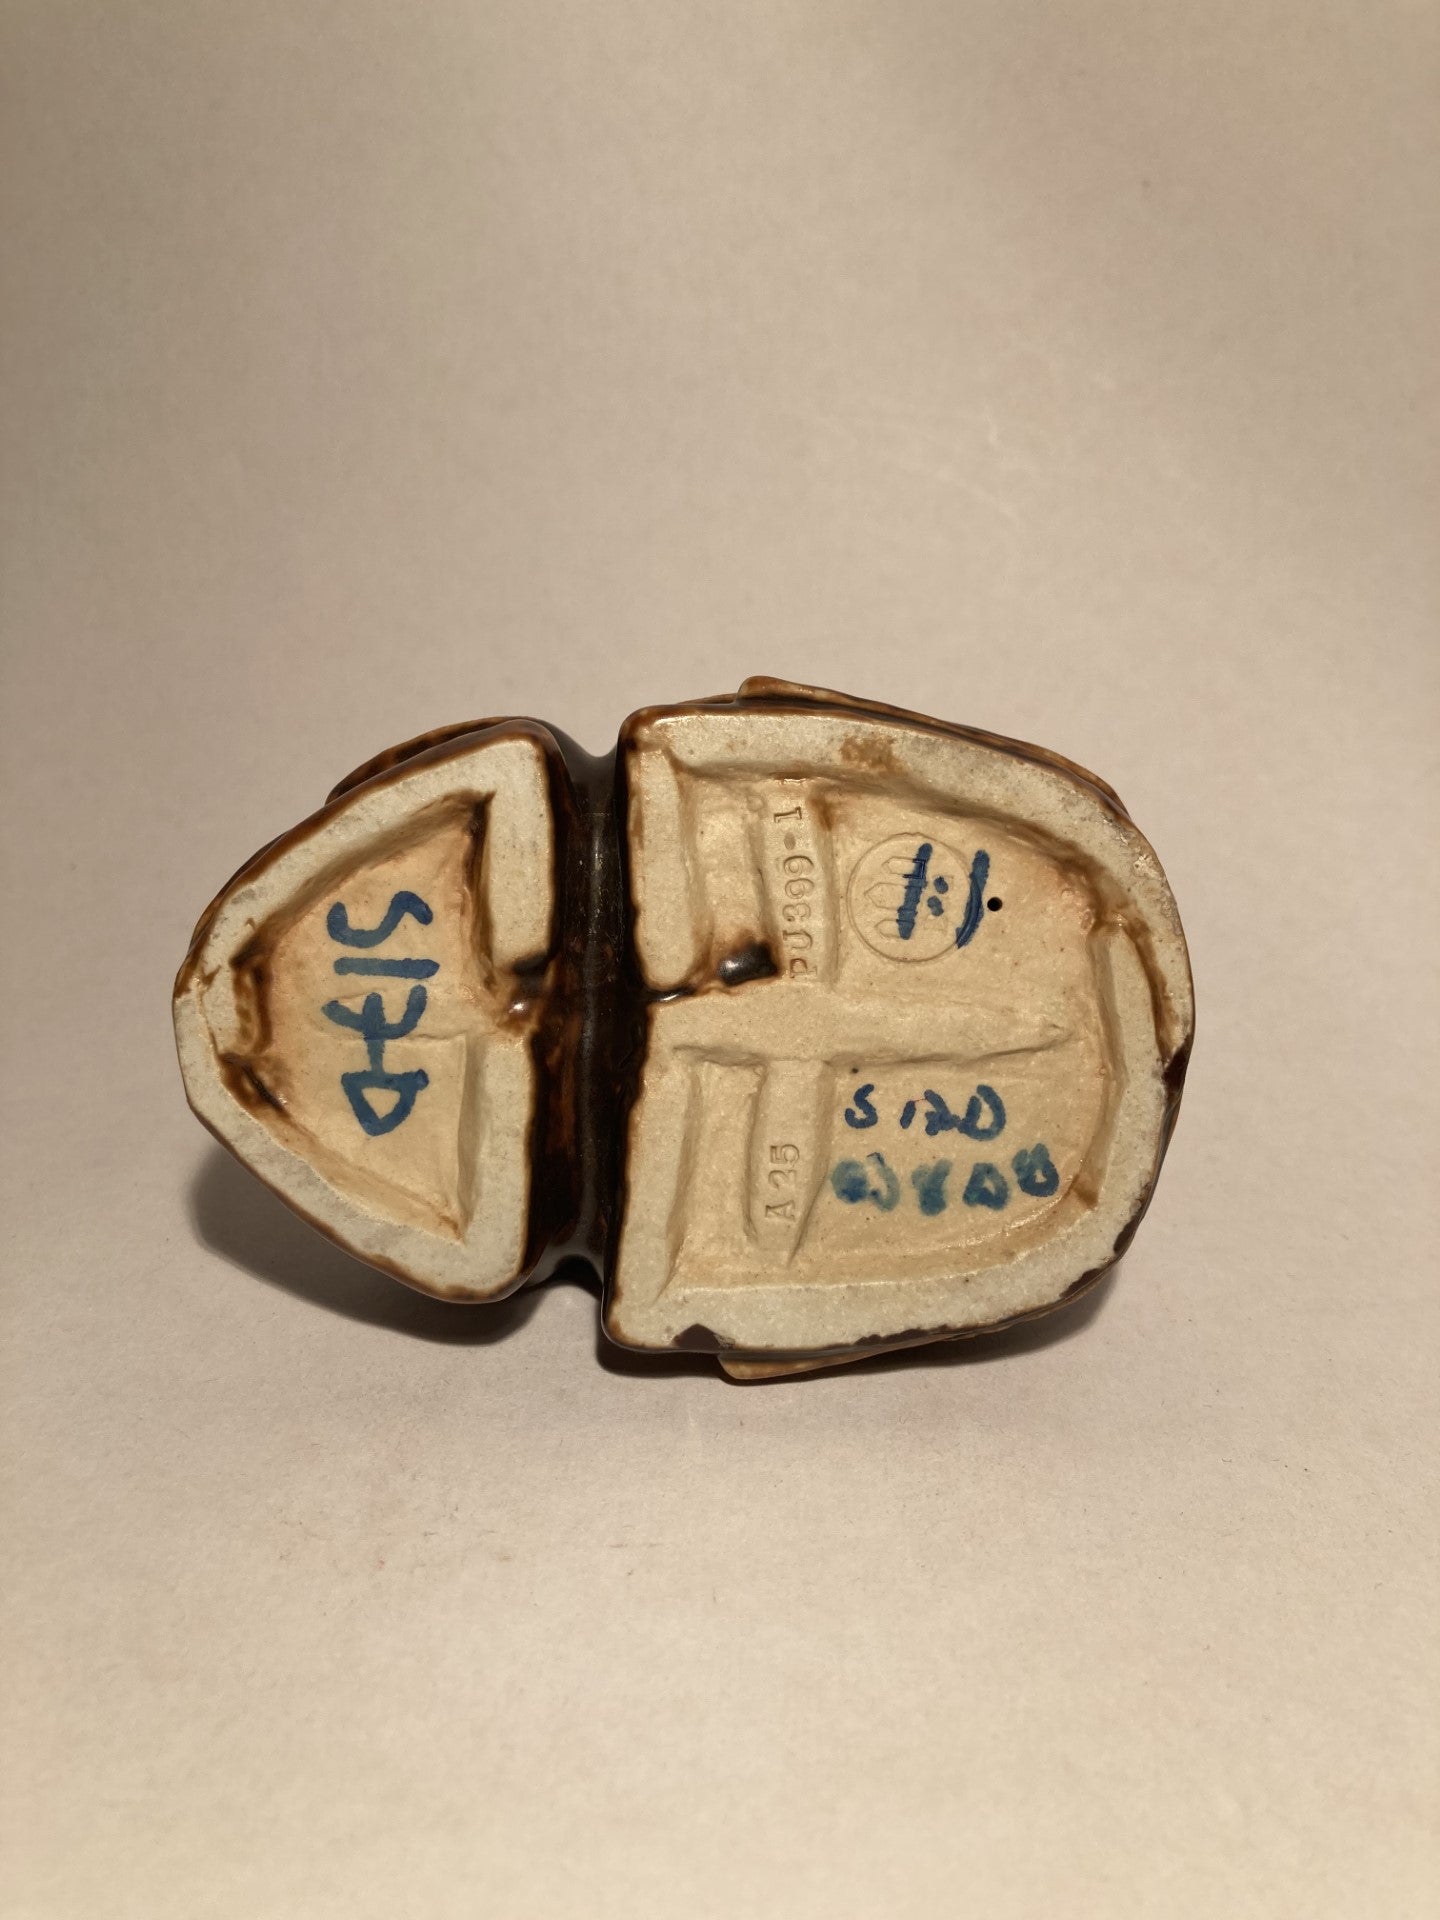 ビングとグロンダール産の石器の珍しいエジプト産スカラベ - no. 01320